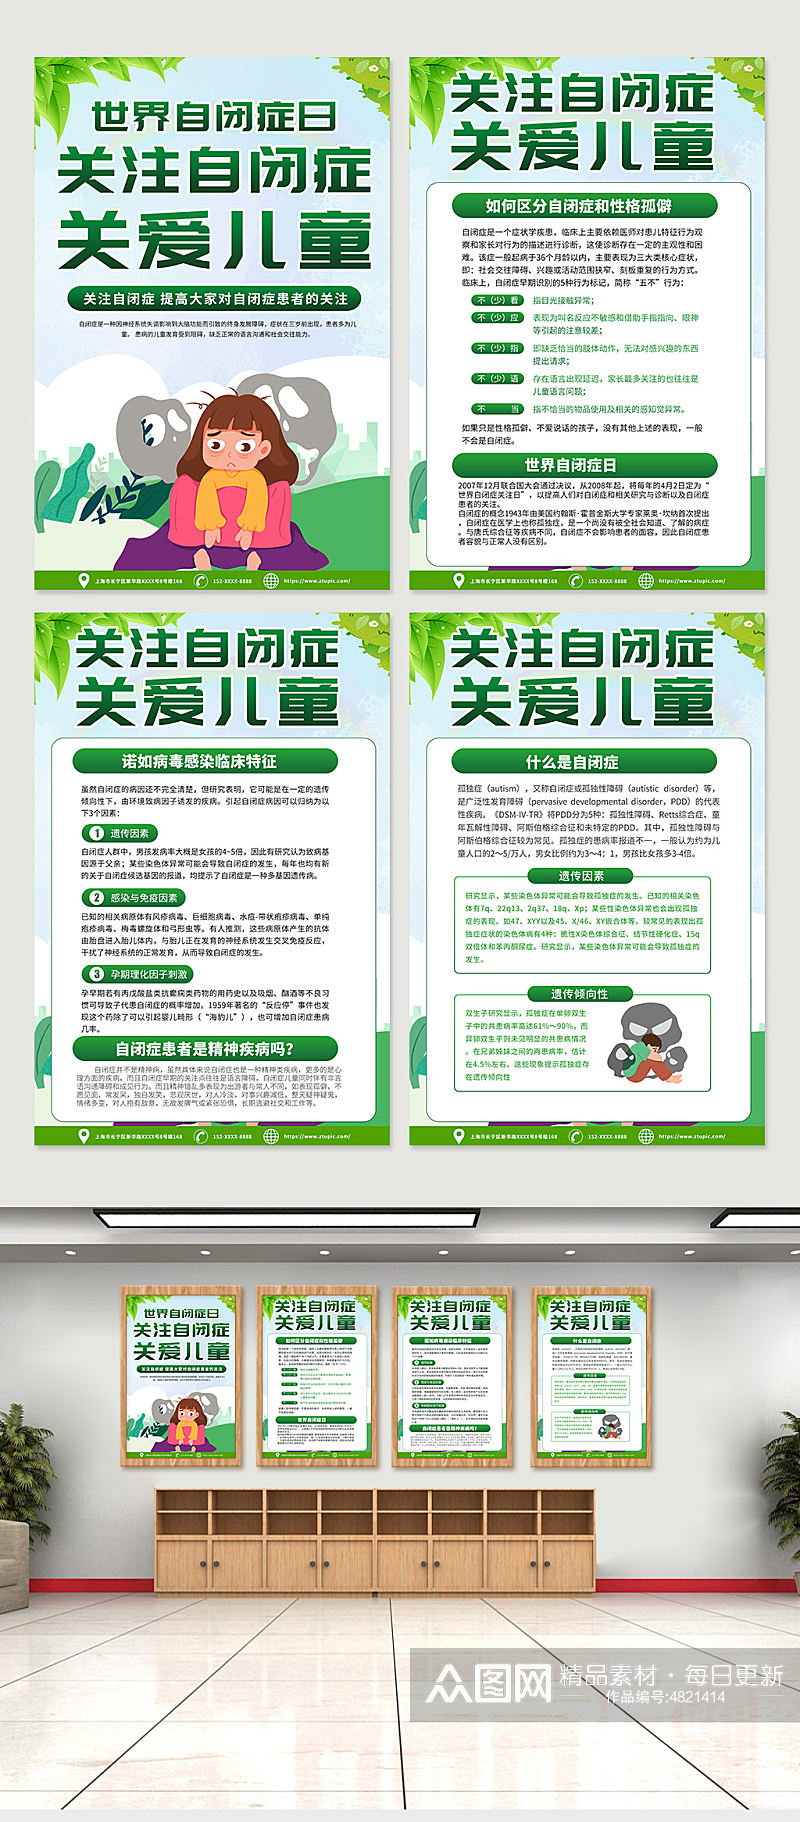 高端绿色世界自闭症日宣传海报设计素材